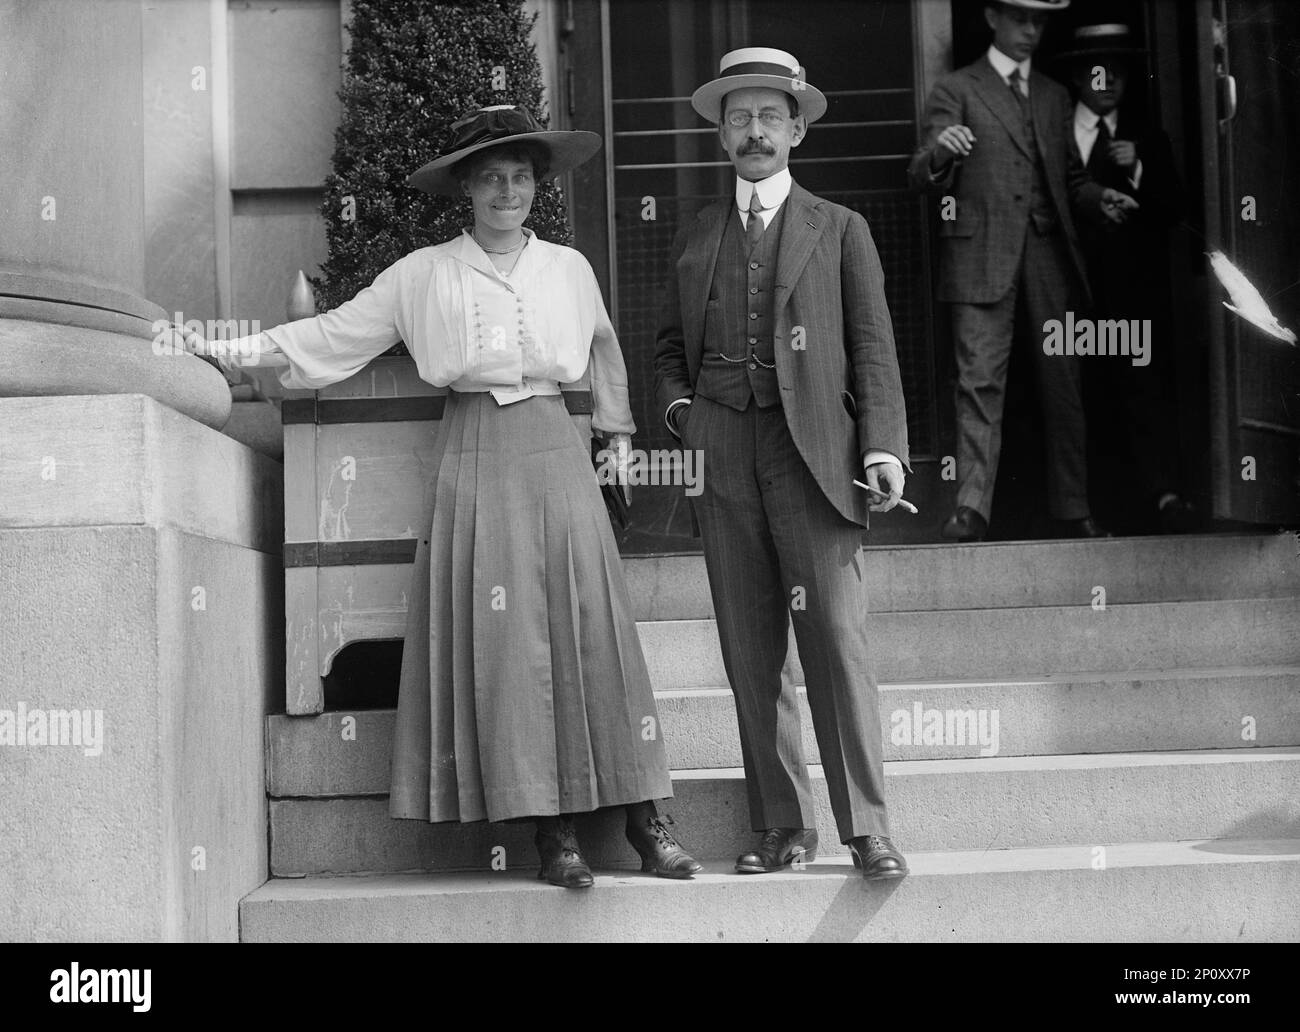 Netherlands Mission To The U.S. - J.B. Van Der Hooven Van Oordt And Wife, 1917. Stock Photo